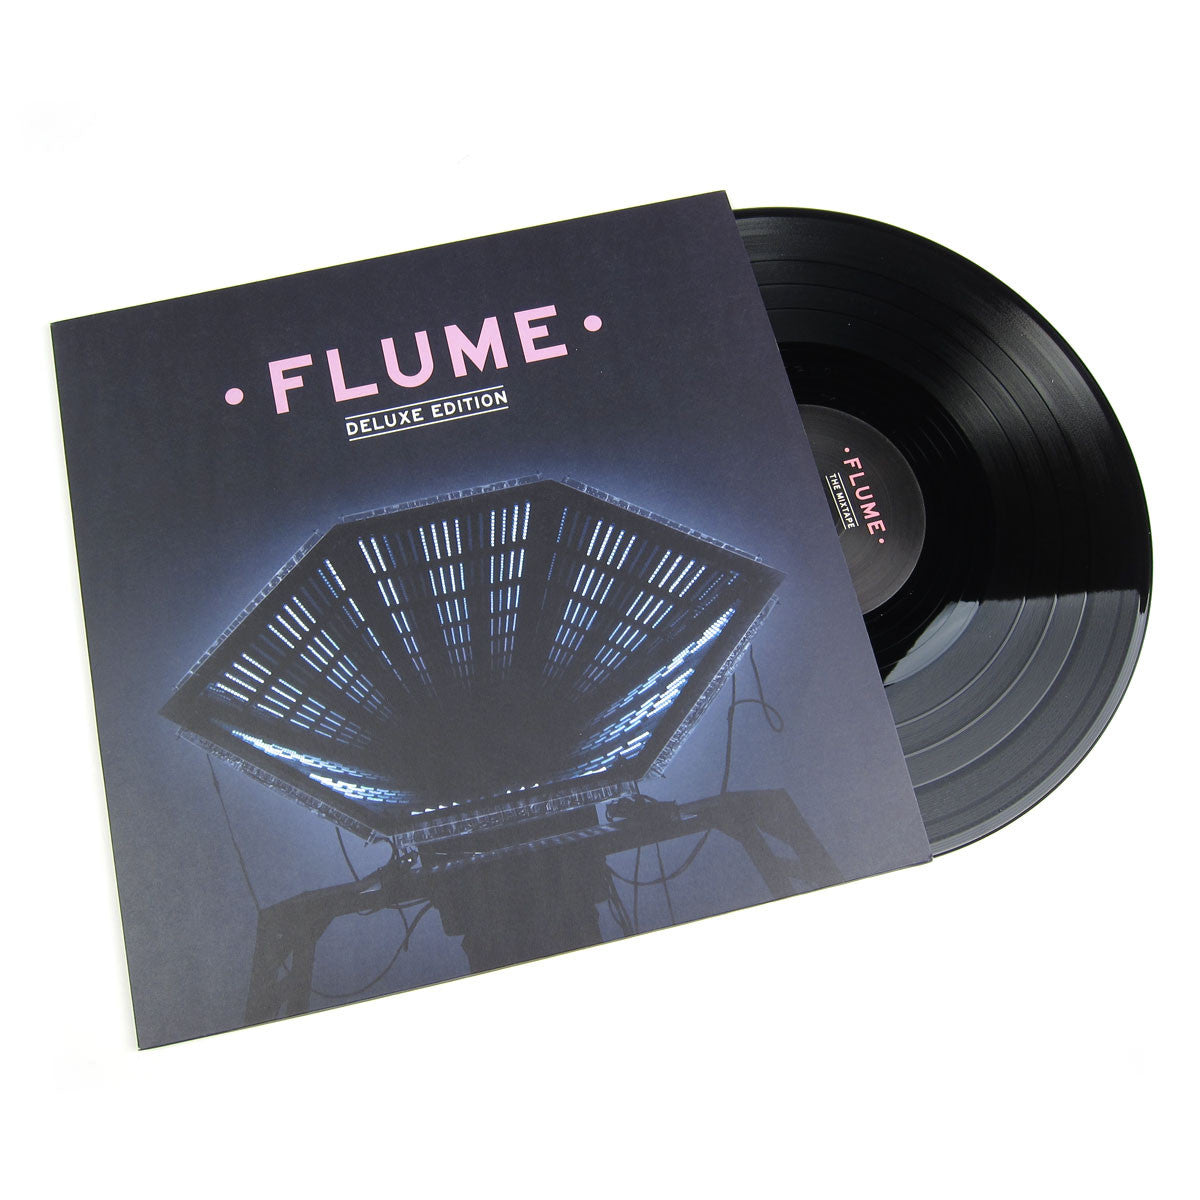 flume debut album